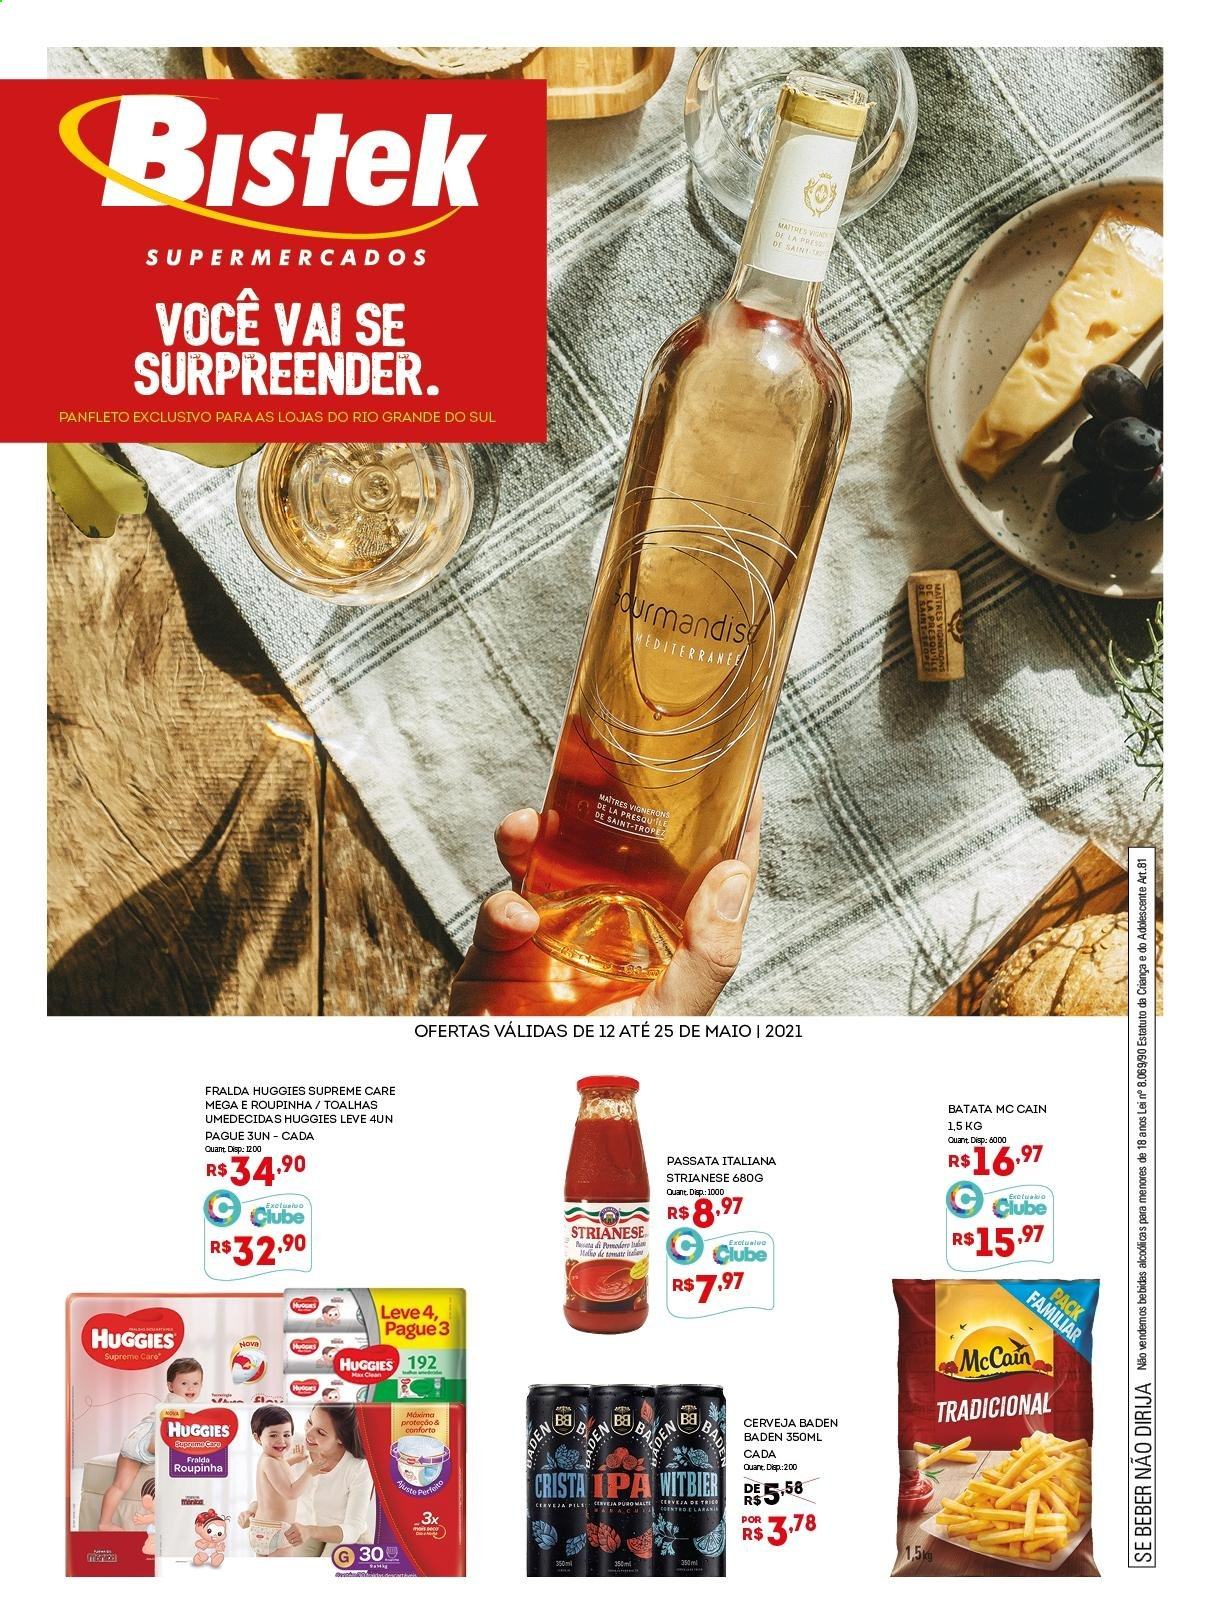 thumbnail - Folheto Bistek Supermercados - 12/05/2021 - 25/05/2021 - Produtos em promoção - batata, McCain, Huggies, fraldas. Página 1.